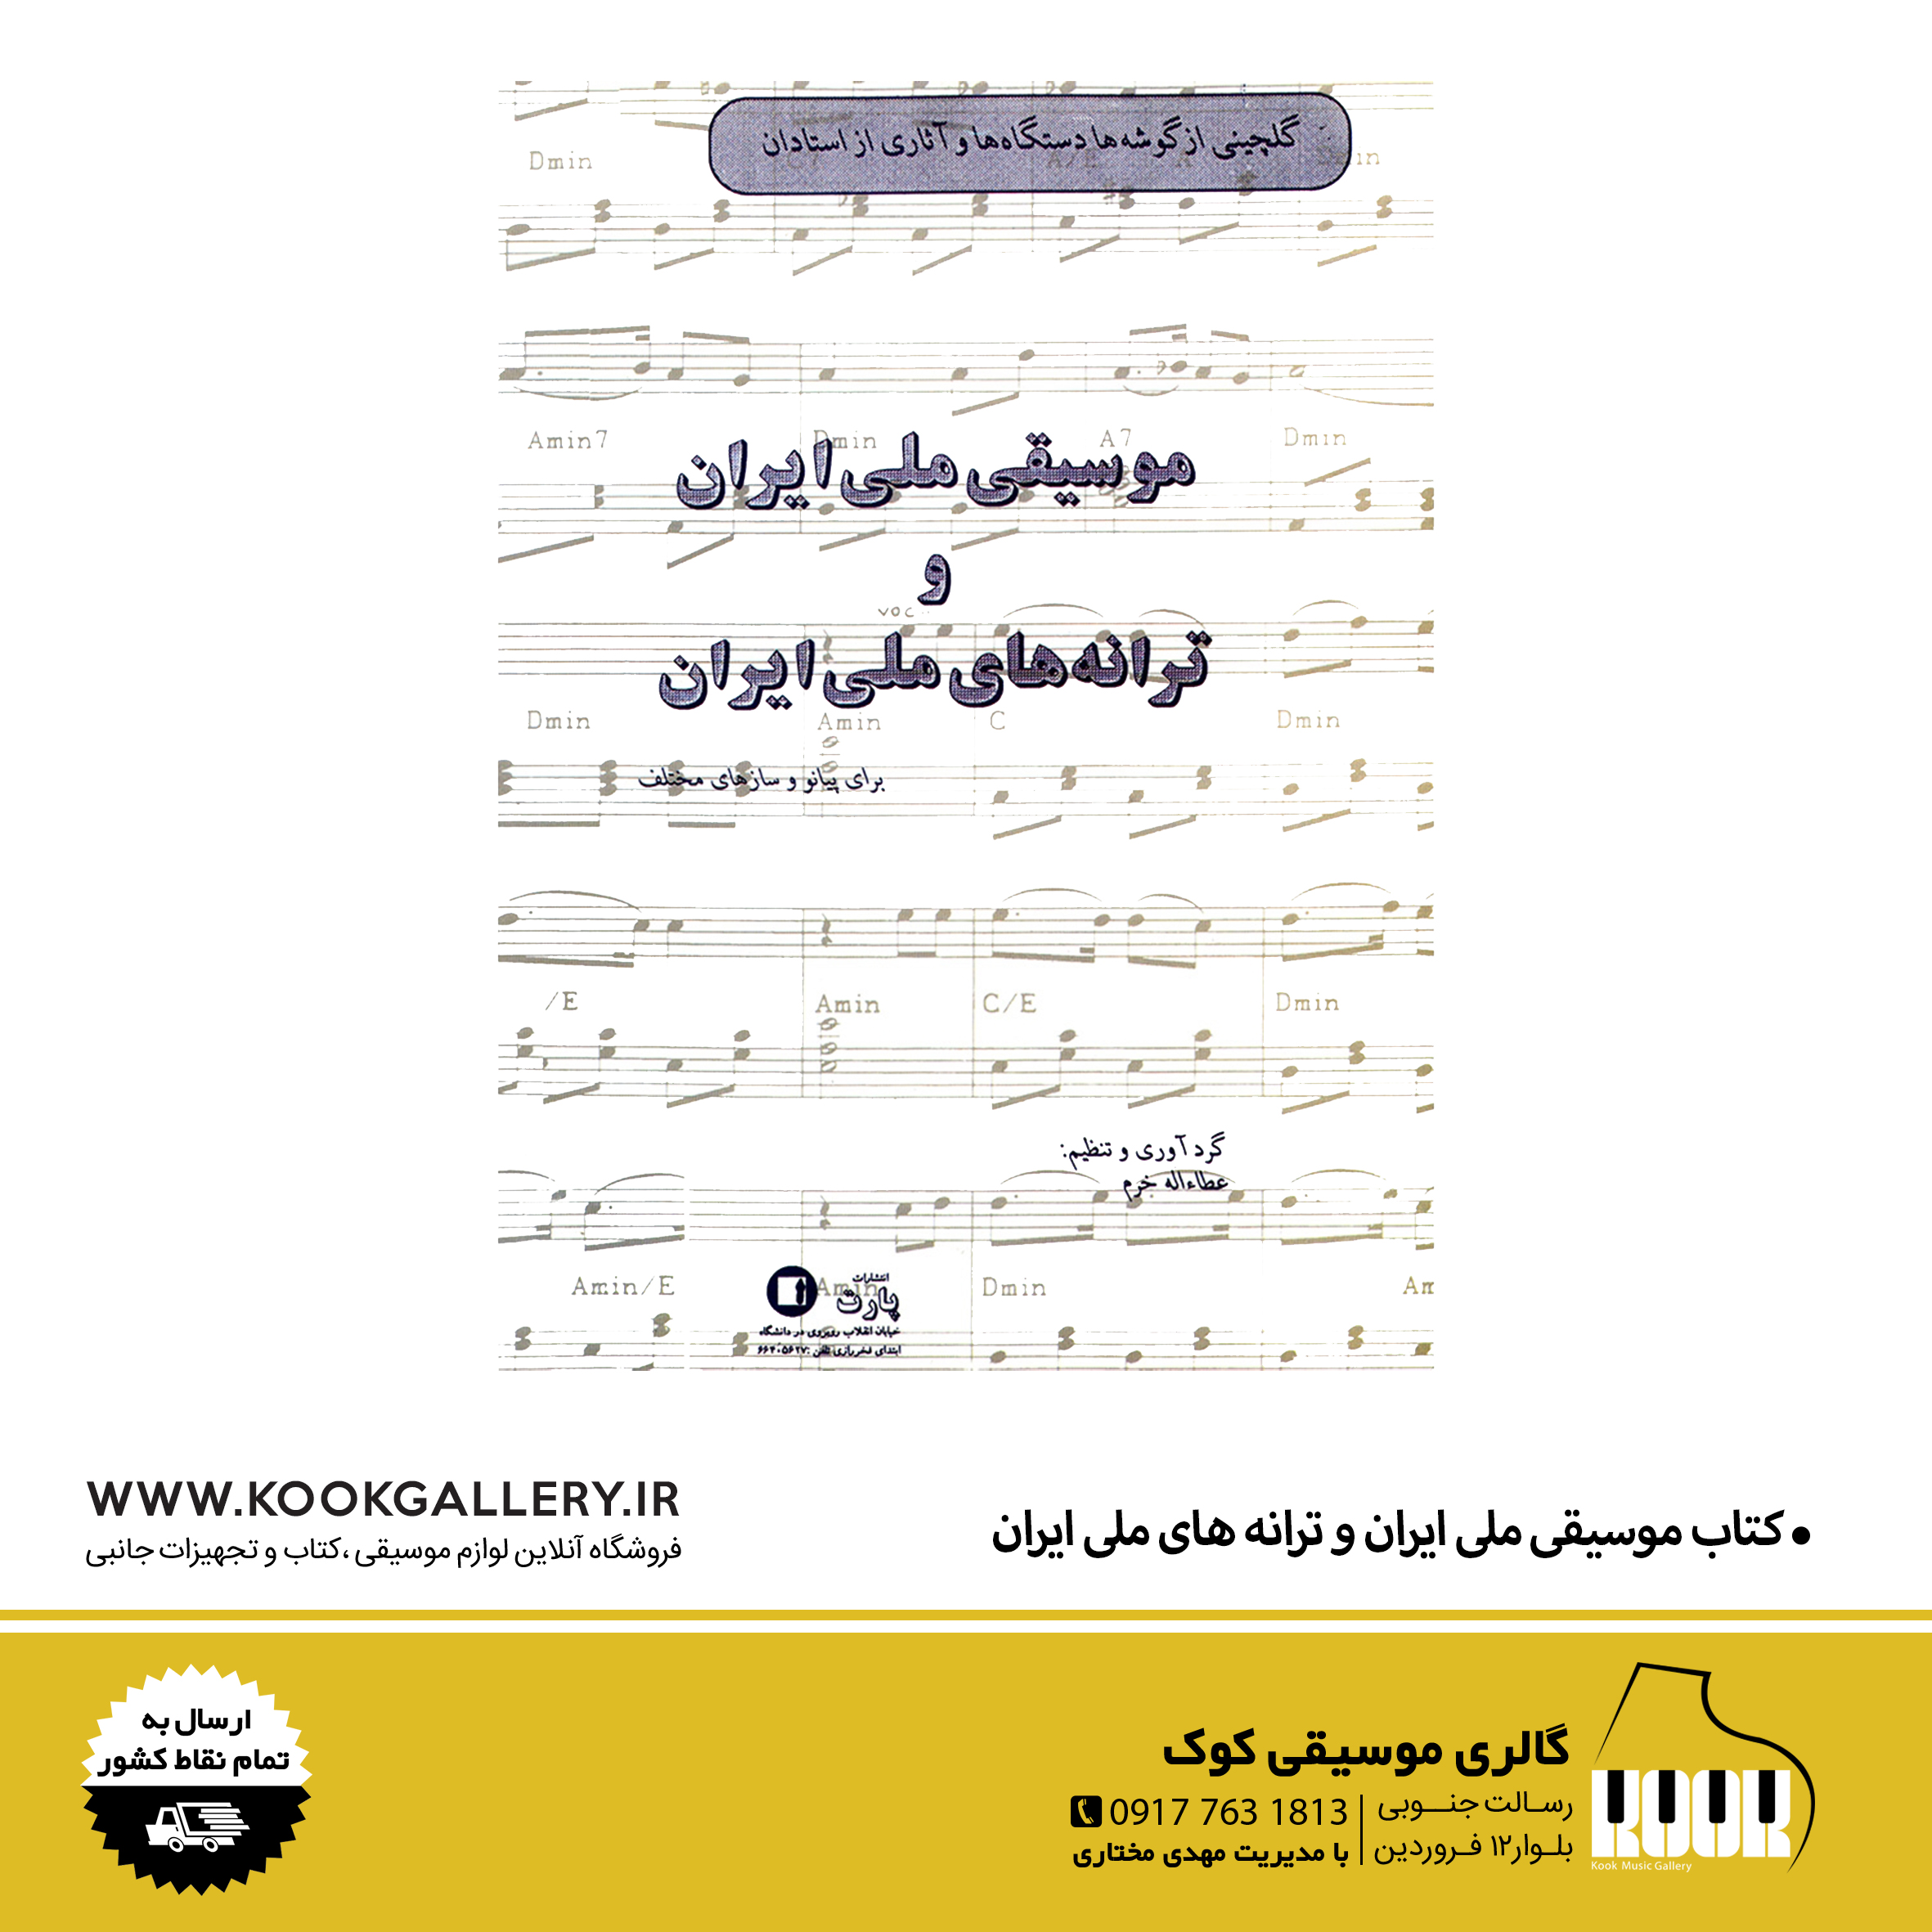 کتاب موسیقی ملی ایران و ترانه های ملی ایران